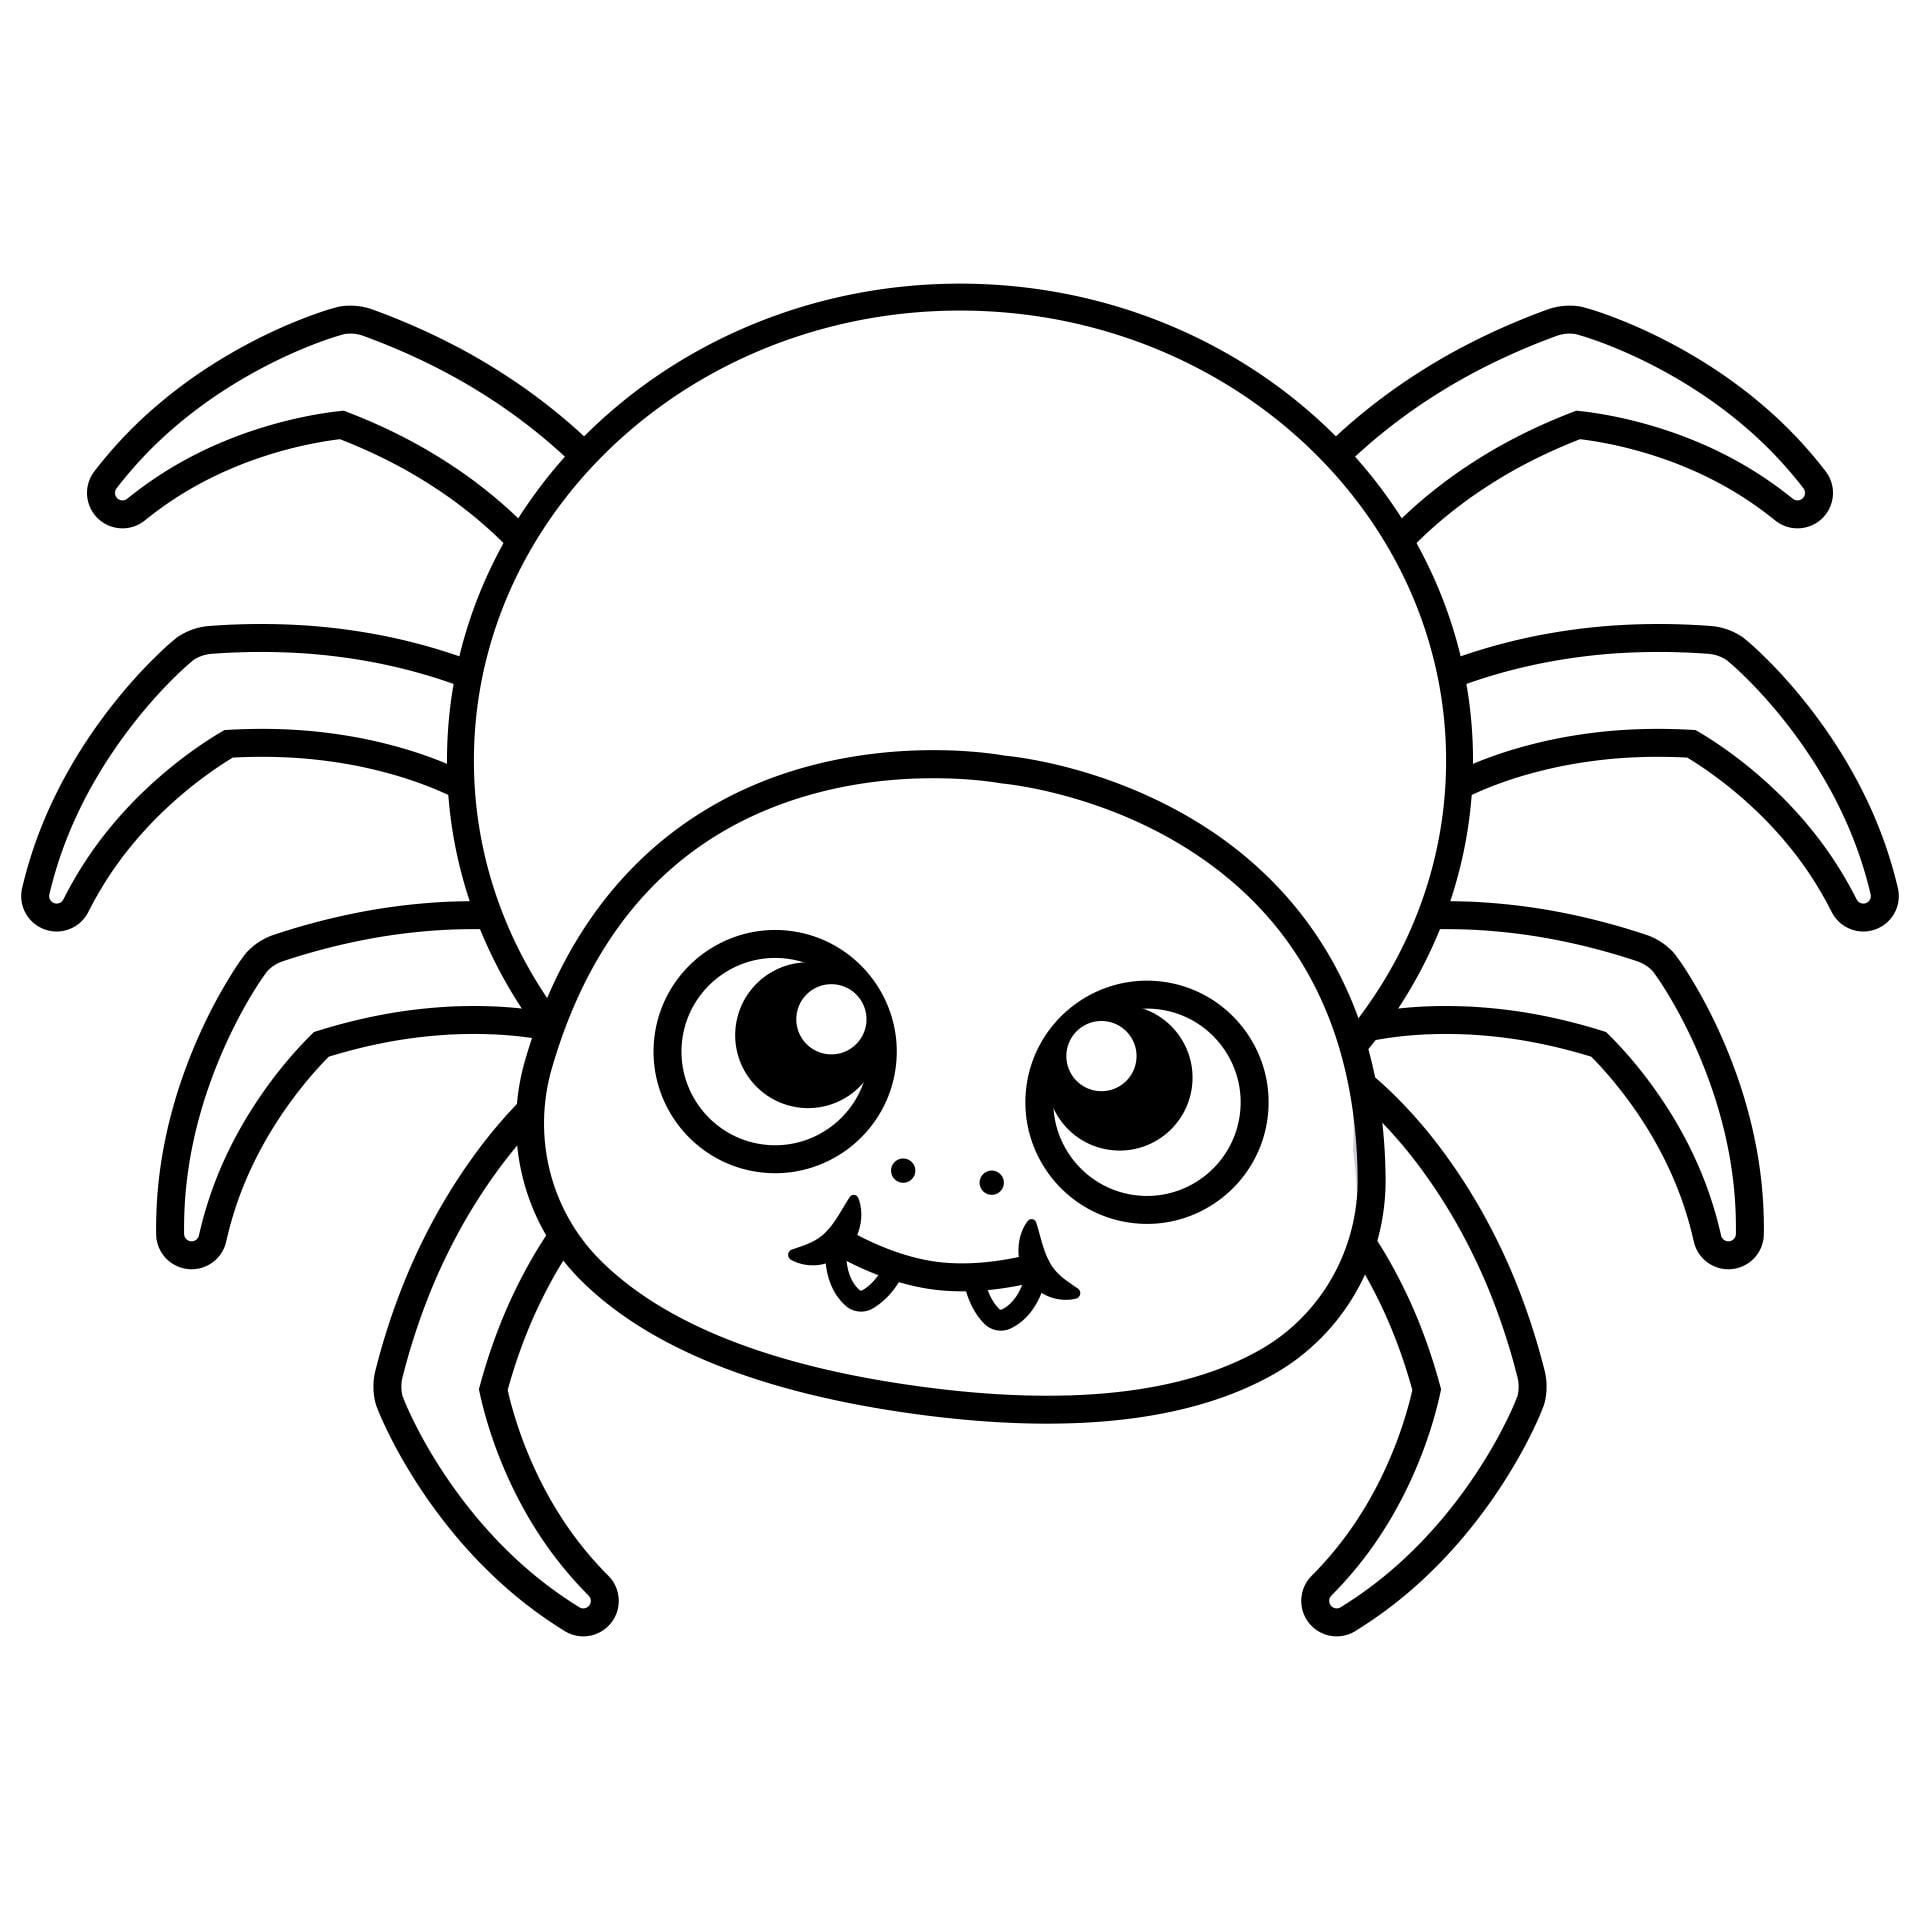 15 Best Printable Halloween Spider Coloring Pages Printablee